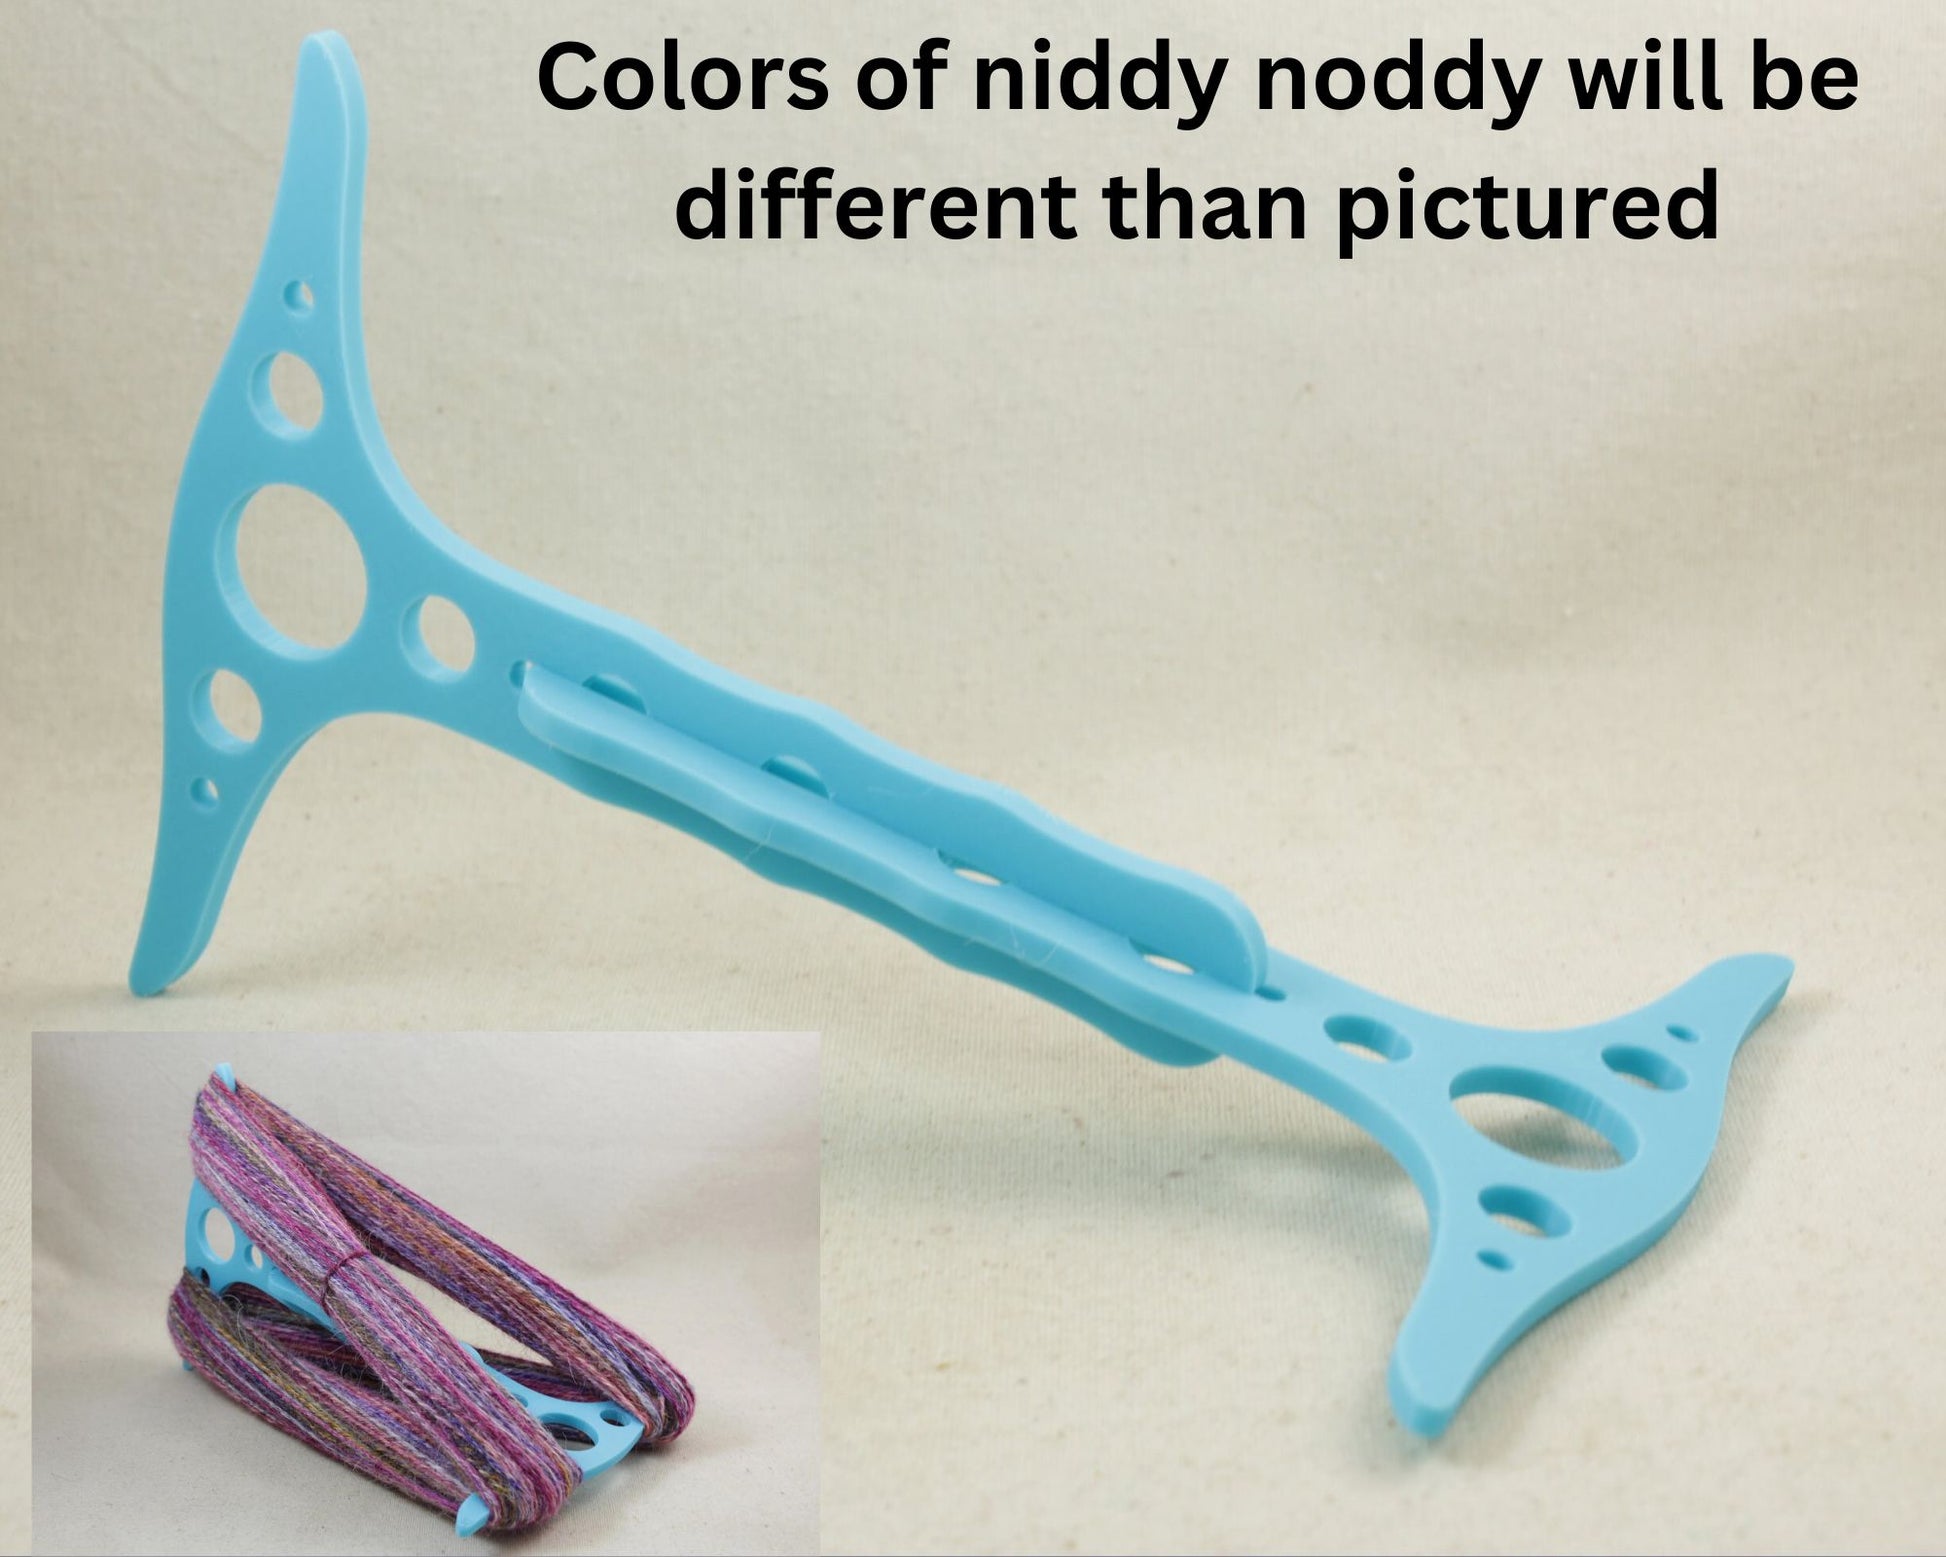 Niddy noddy